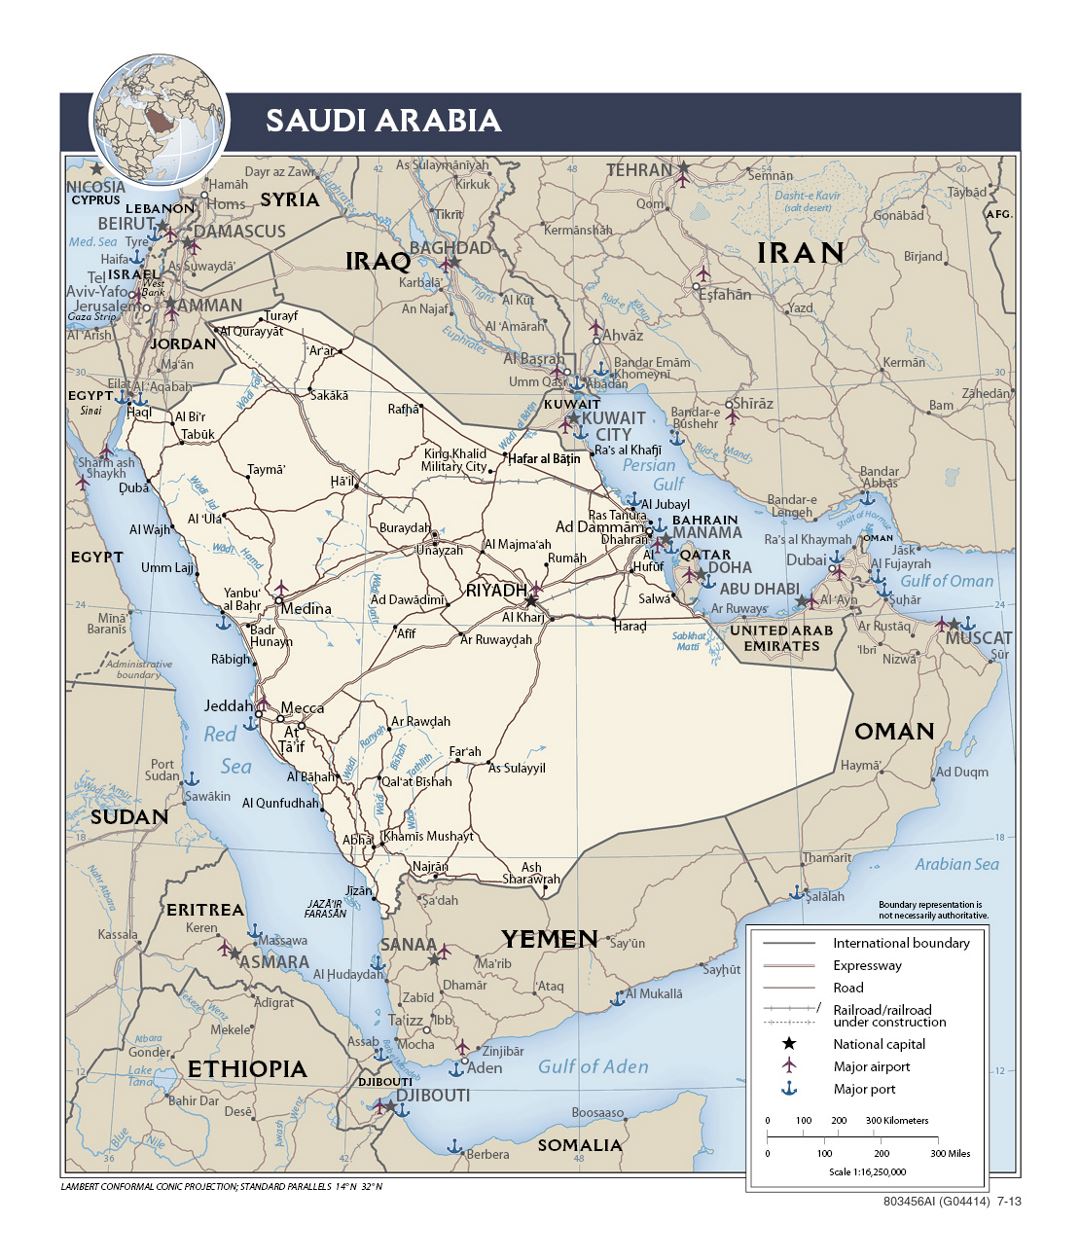 Детальная политическая карта Саудовской Аравии с дорогами, железными дорогами, портами, аэропортами и крупными городами - 2013